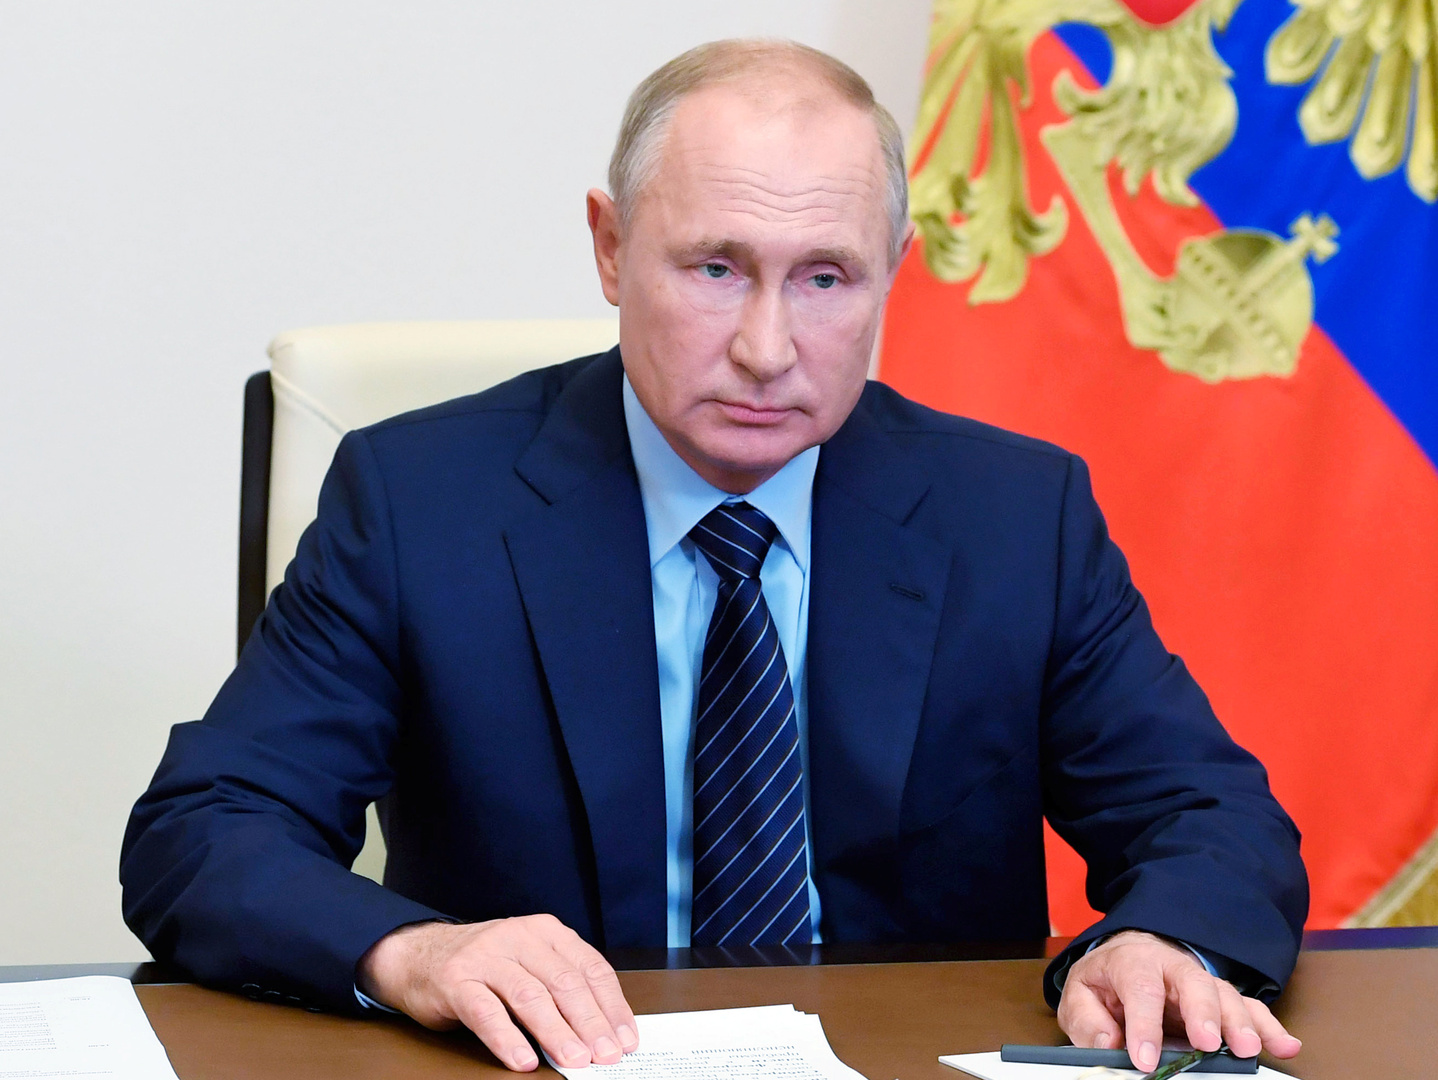 بوتين يؤكد مواصلة روسيا دعمها لجمهورية أوسيتيا الجنوبية 